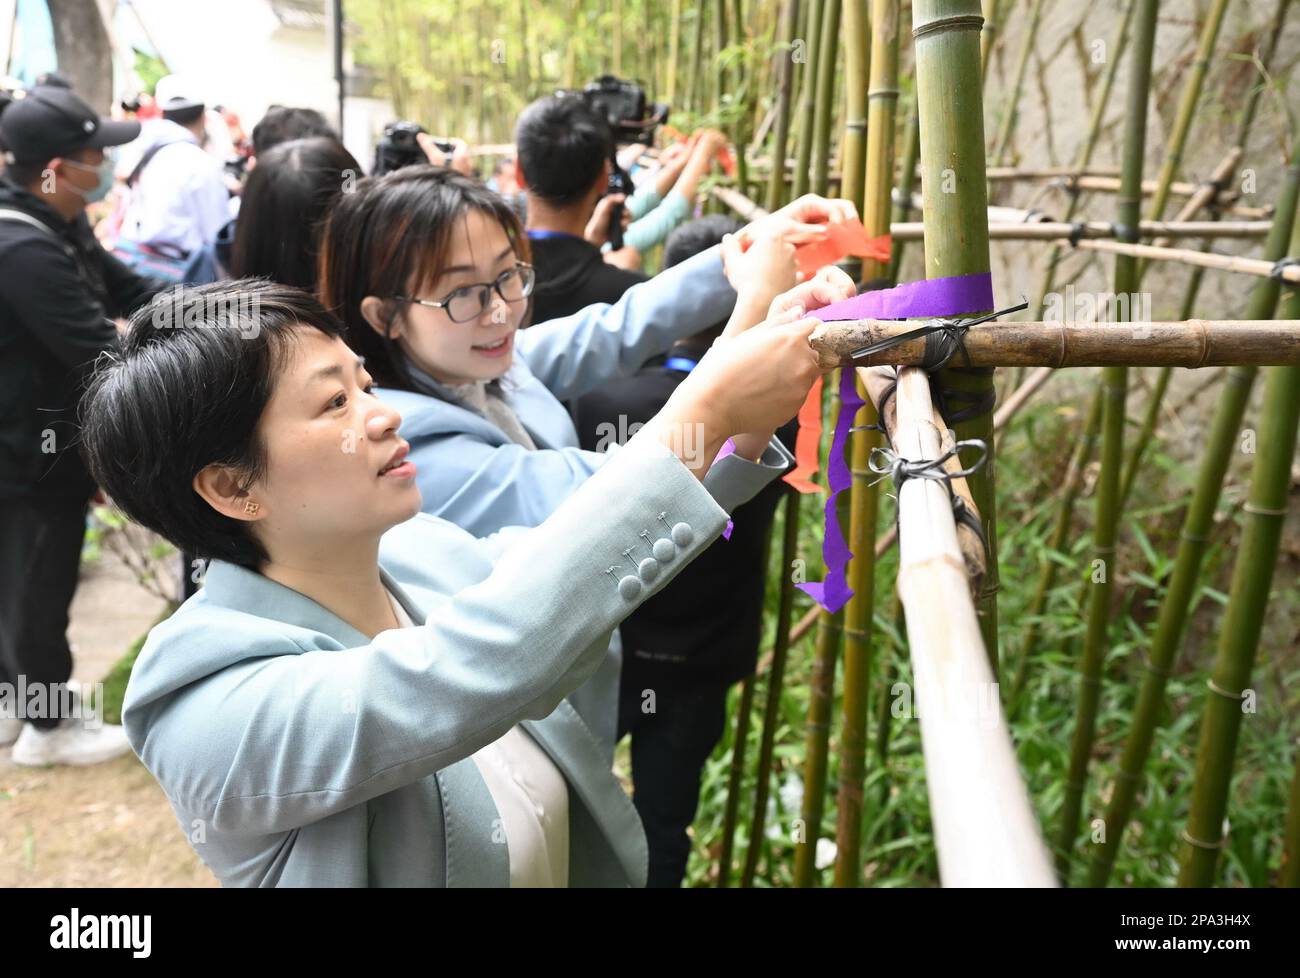 Fuzhou, Chinas Provinz Fujian. 11. März 2023. Die Menschen binden bunte Bänder, um Hua Zhao Jie, das bedeutet Blumenfestival, in einem Park in Fuzhou, südöstlich Chinas Provinz Fujian, am 11. März 2023 zu feiern. Kredit: Lin Shanchuan/Xinhua/Alamy Live News Stockfoto